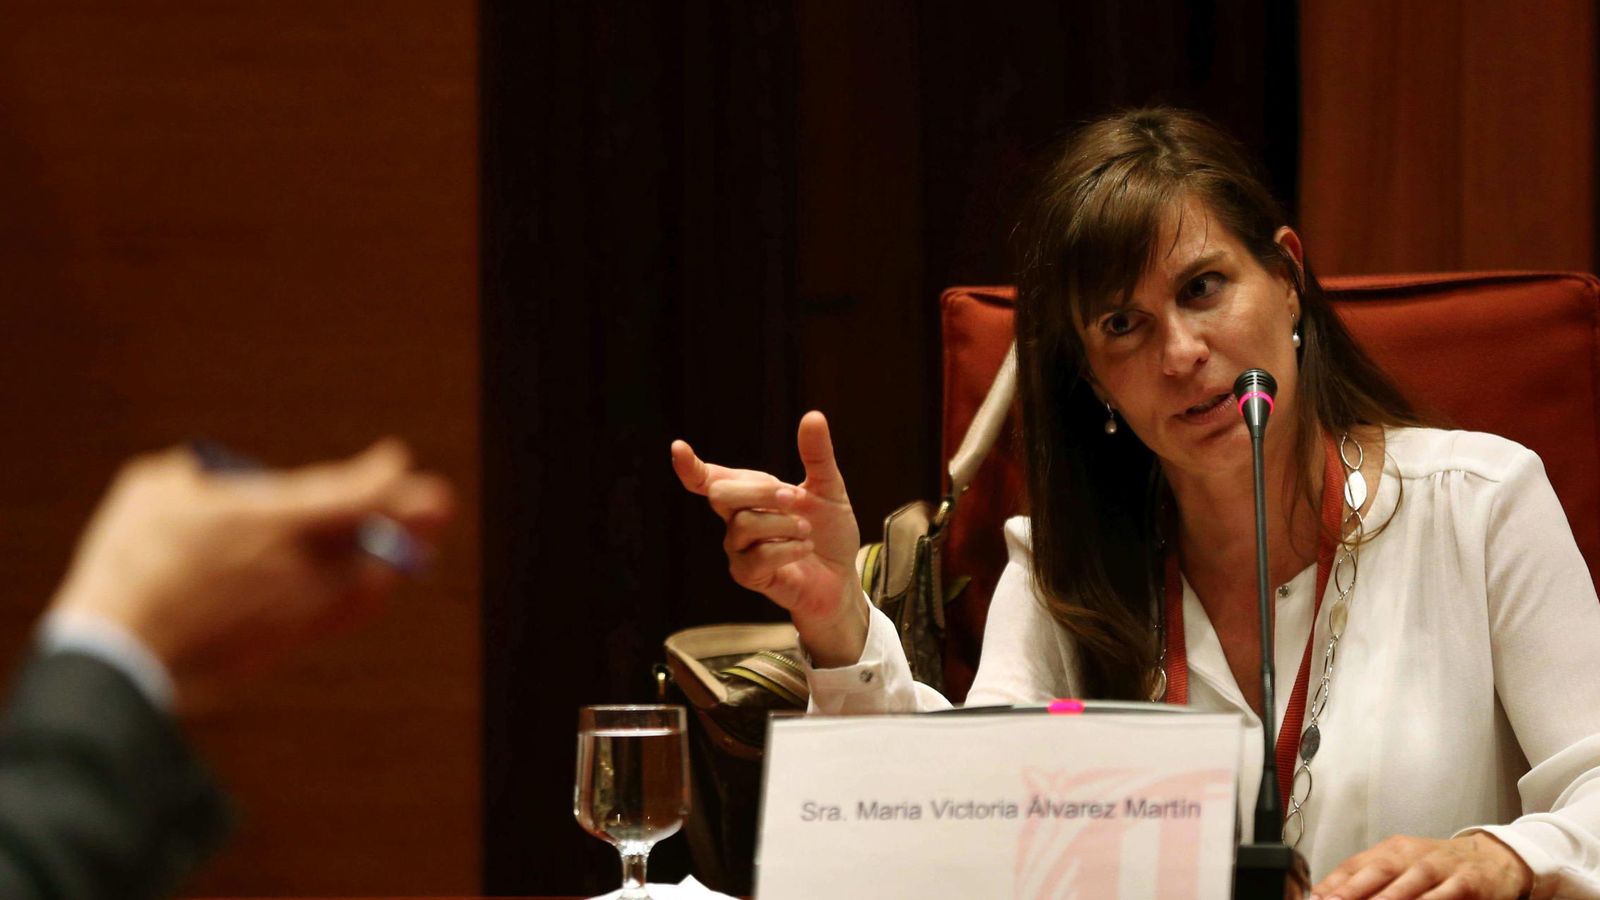 Foto: La expareja de Jordi Pujol Ferrusola María Victoria Álvarez comparece ante la comisión de investigación sobre el caso Pujol. (EFE)